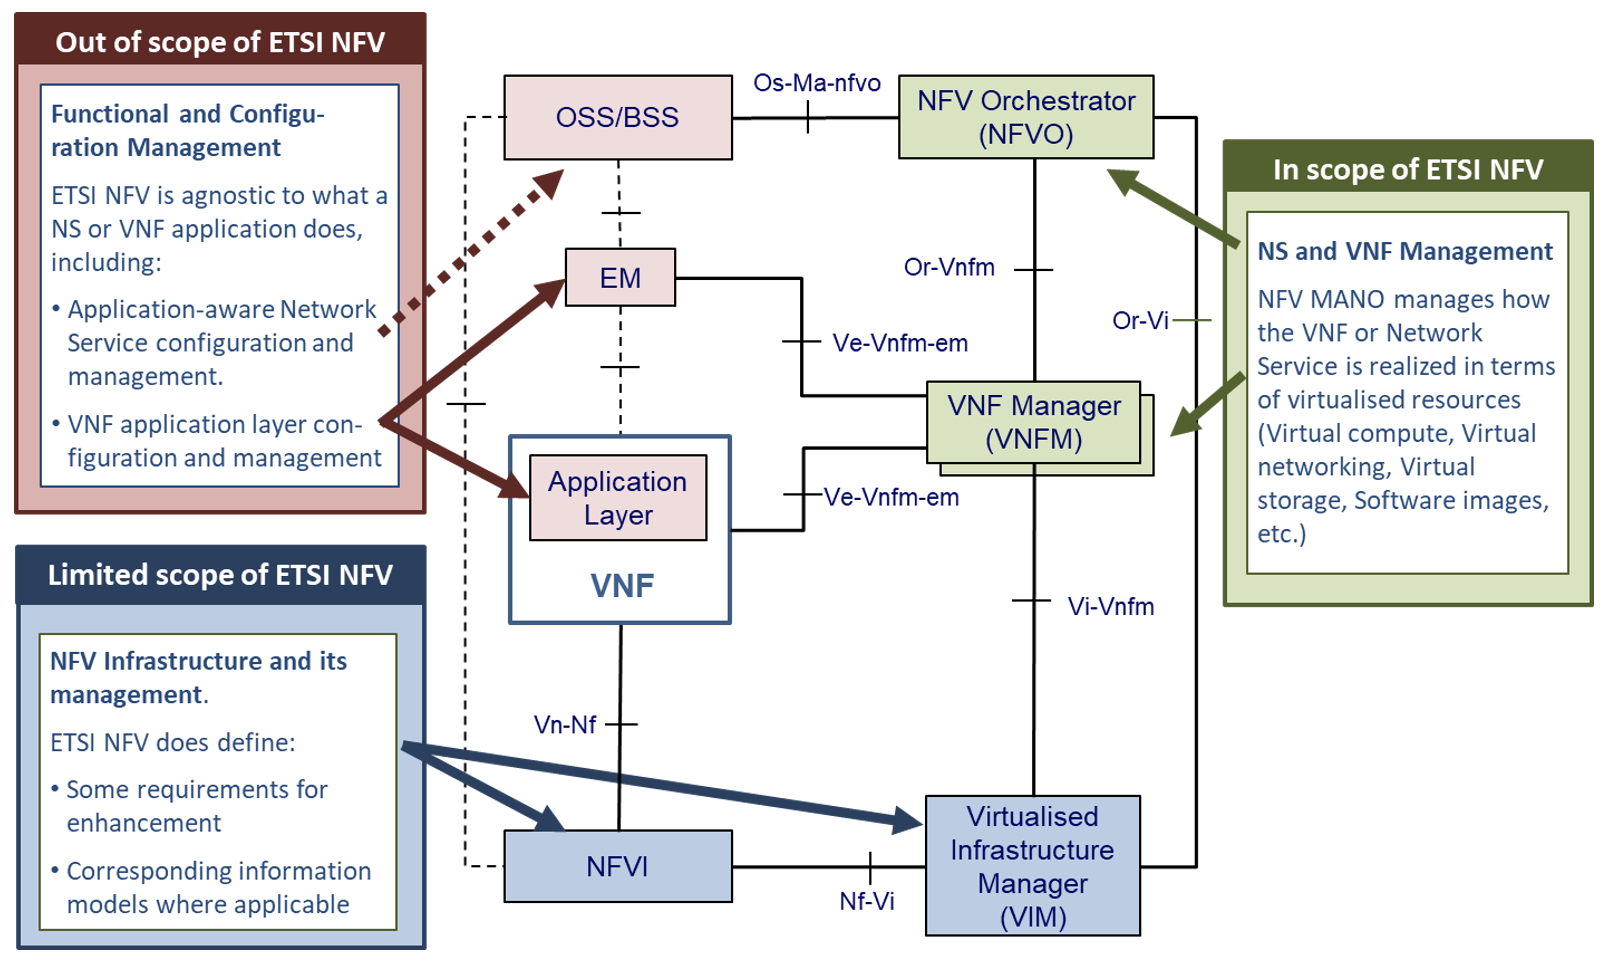 "Figure 5: Scope ETSI NFV"